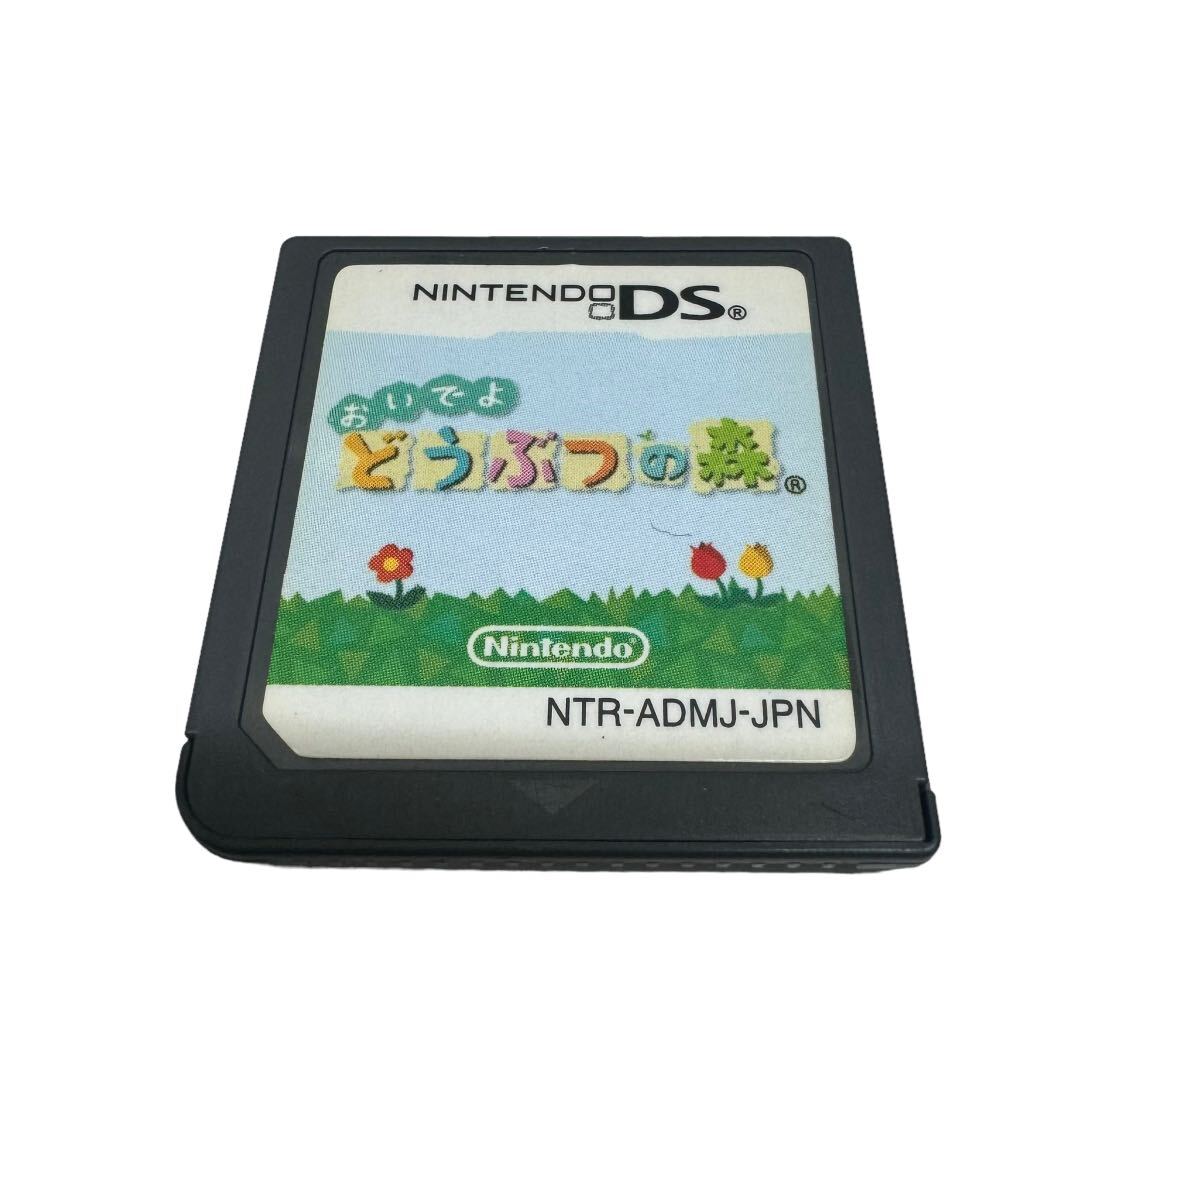 Nintendo DS Lite 任天堂 ニンテンドーDS Nintendo DS Lite USG-001 ピンク 本体 ジャンク品 どうぶつの森付属 セット販売 10161の画像7